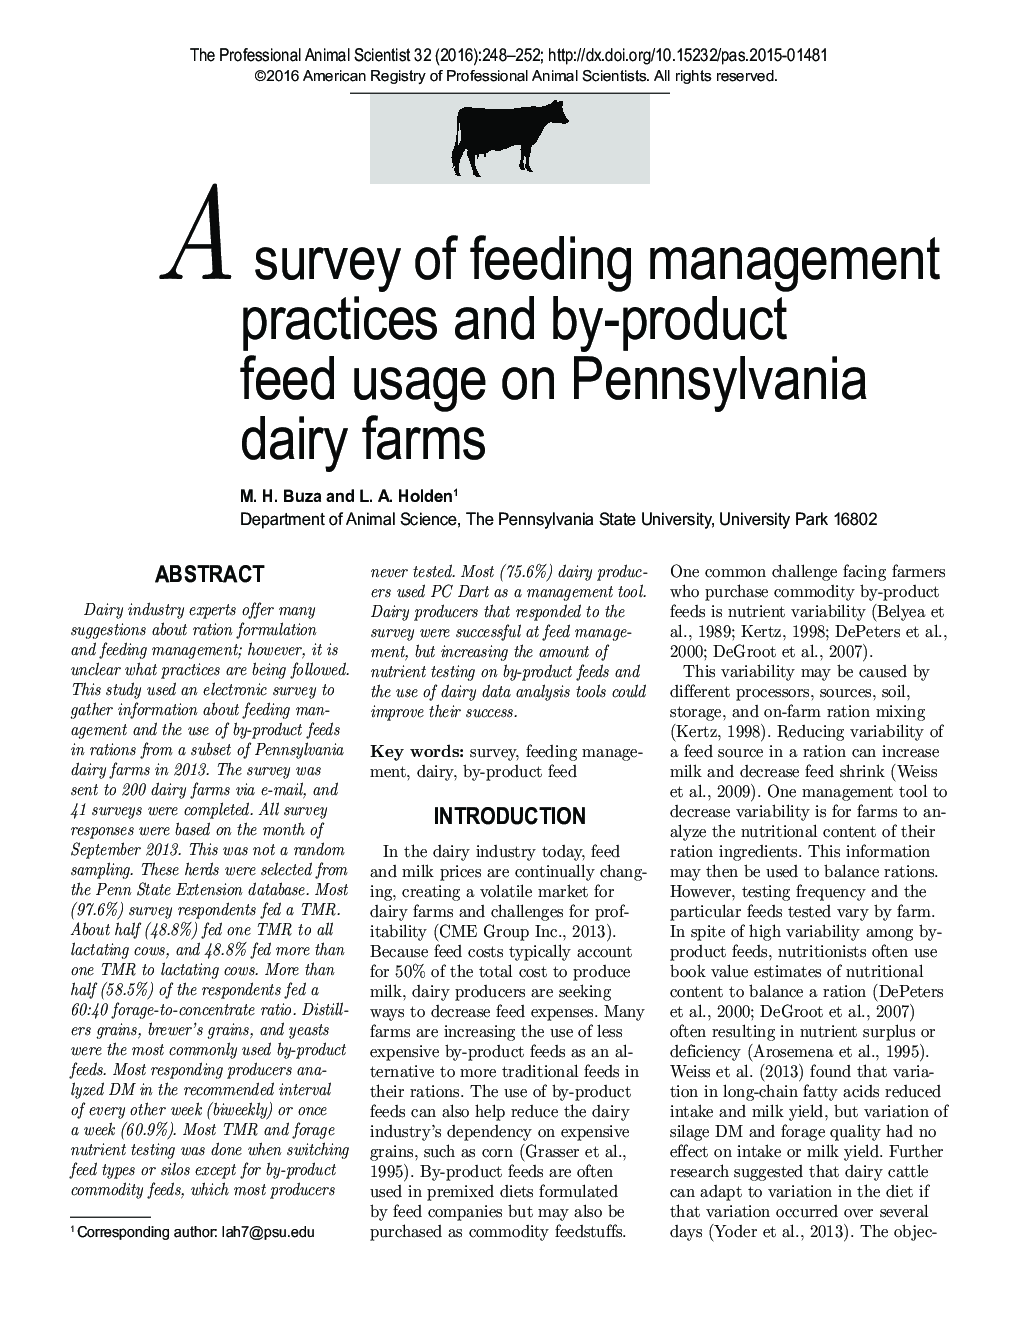 یک نظرسنجی از شیوه های مدیریت تغذیه و استفاده از فرآورده های خوراکی در مزارع لبنی پنسیلوانیا 